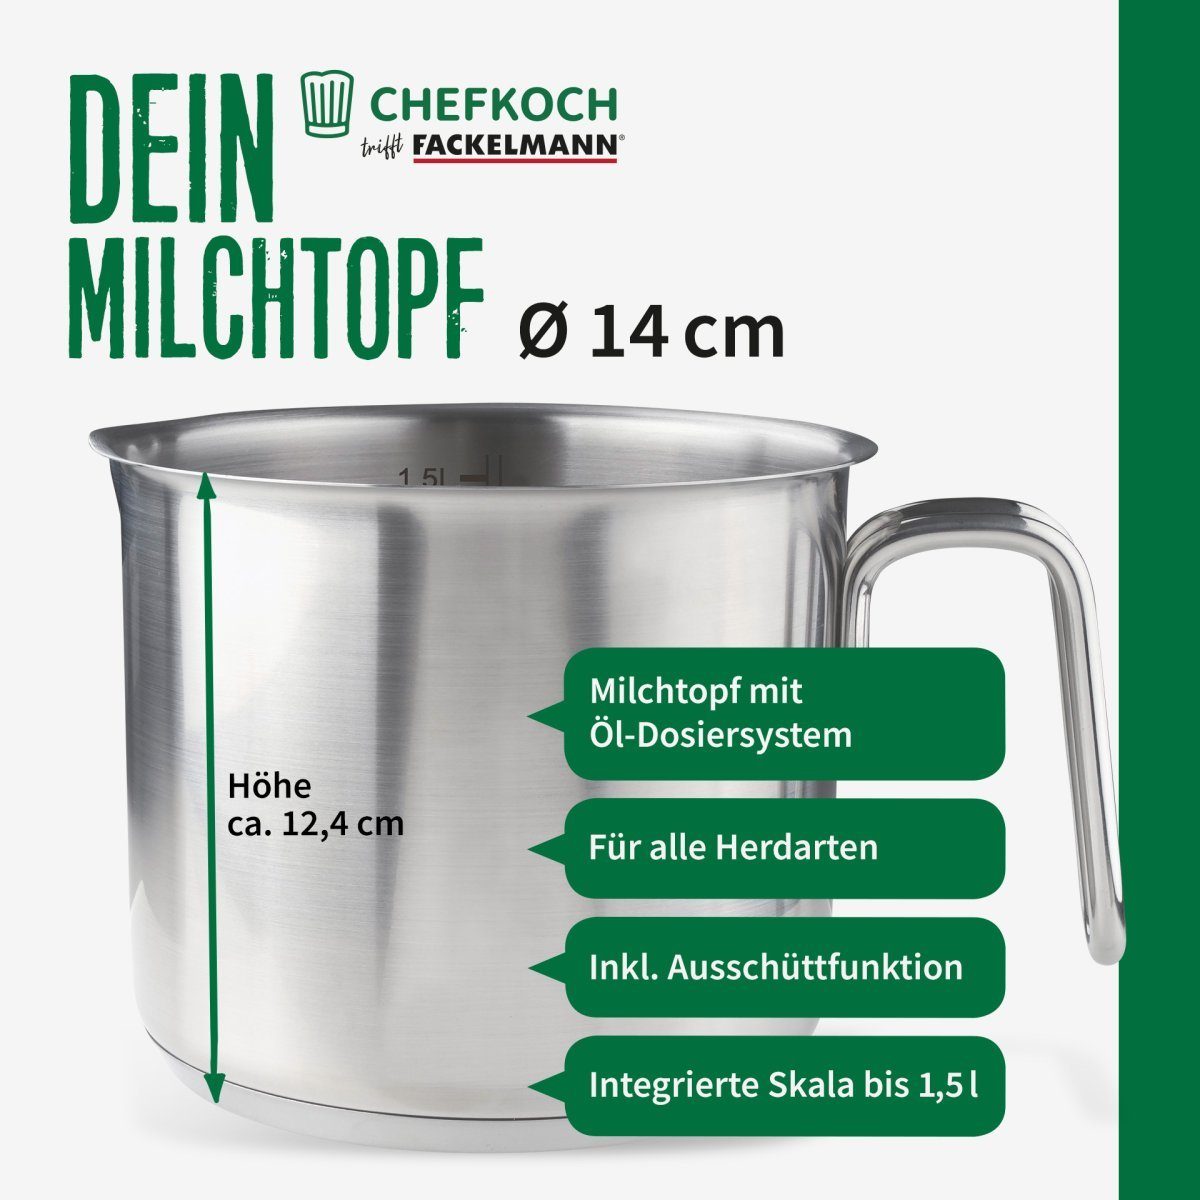 Milchtopf Chefkoch trifft Fackelmann München